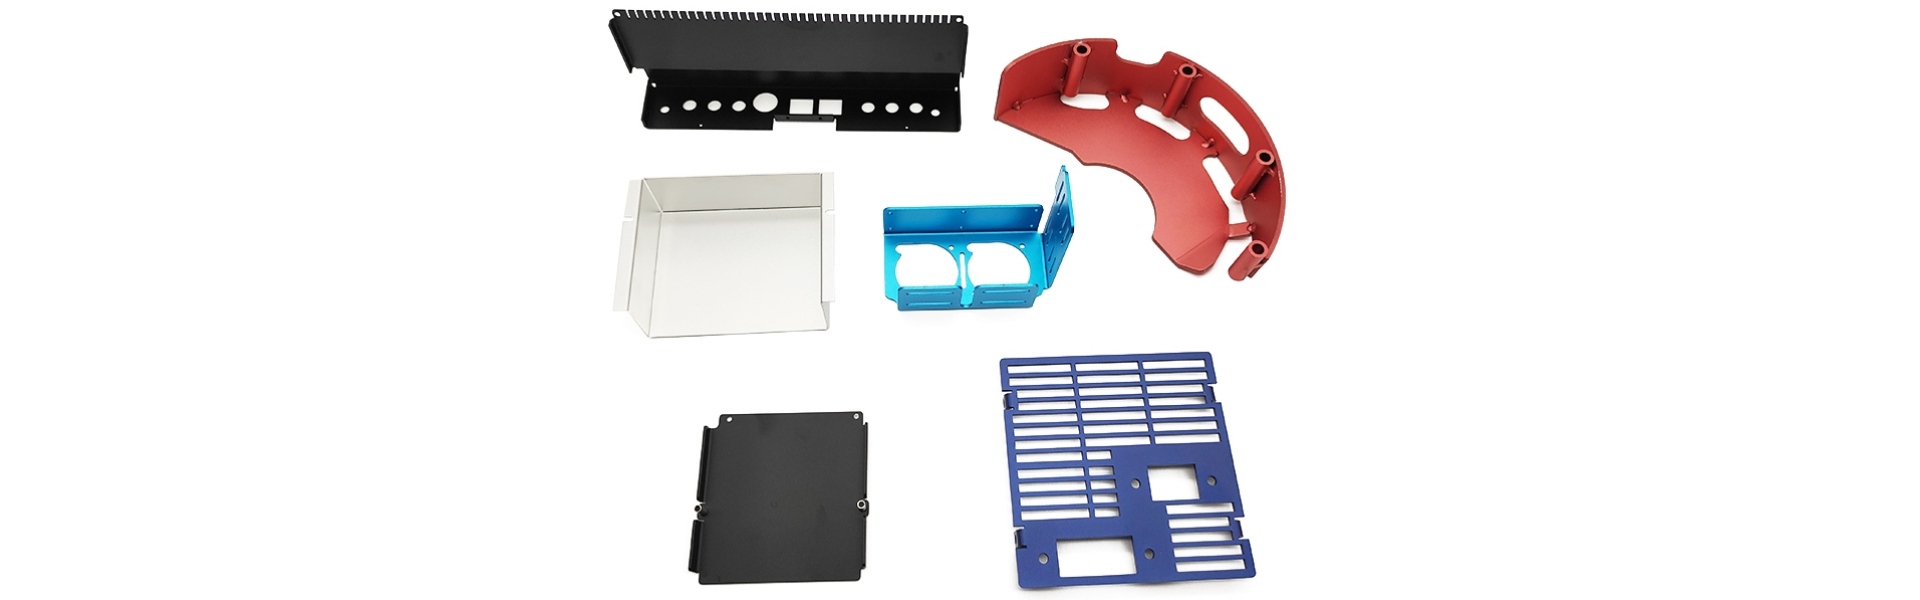 판금 제조, 금속 스탬핑 부품, CNC 가공 서비스,Xucheng Precision Sheet metal Products Co., LTD